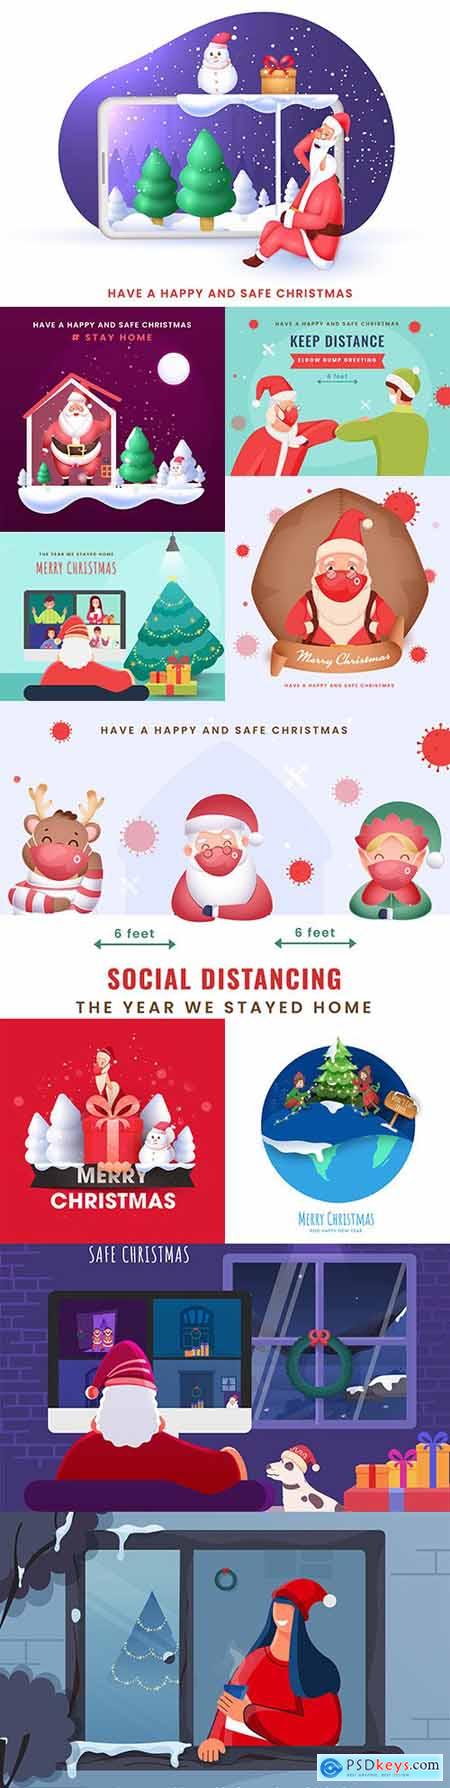 Santa Claus celebrates Christmas at home maintaining social distancing